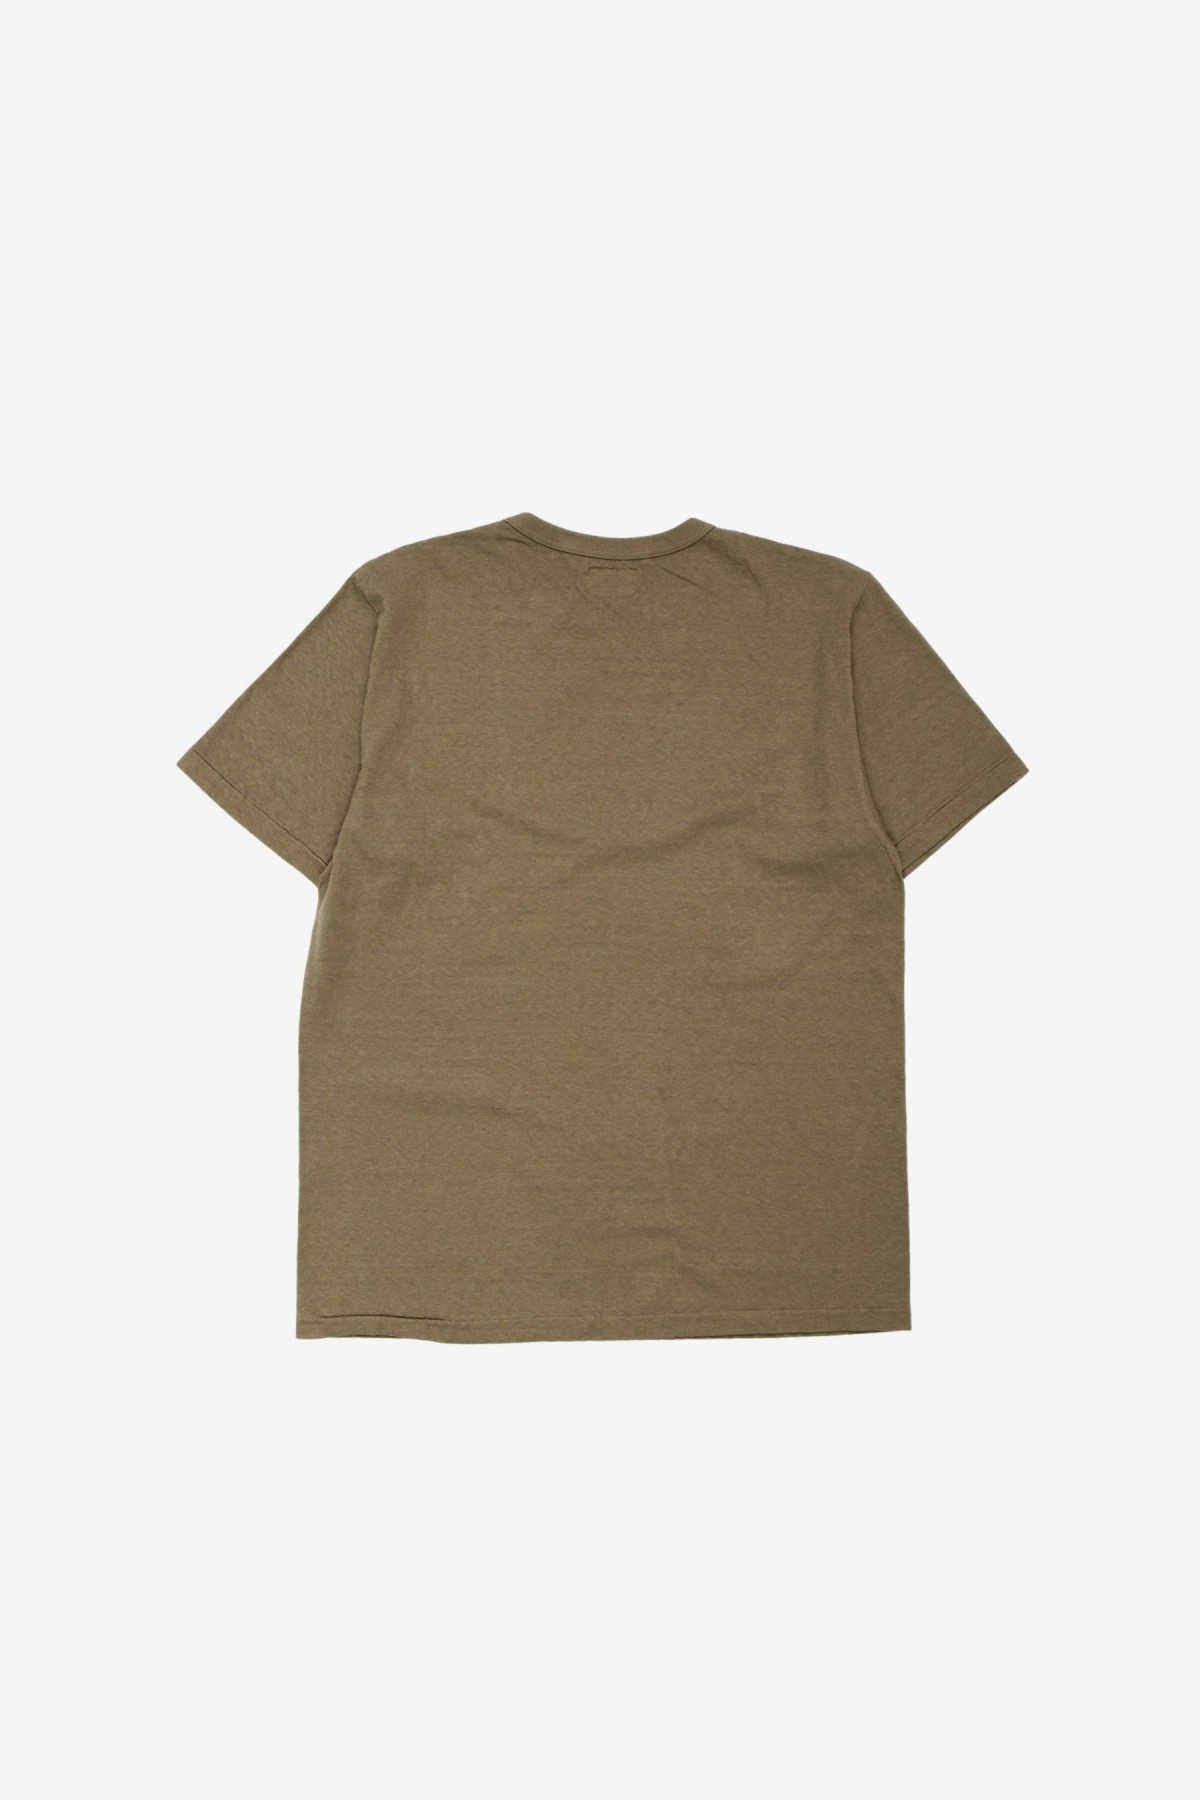 Sunray Sportswear Haleiwa Short Sleeve T-Shirt in Deep Lichen